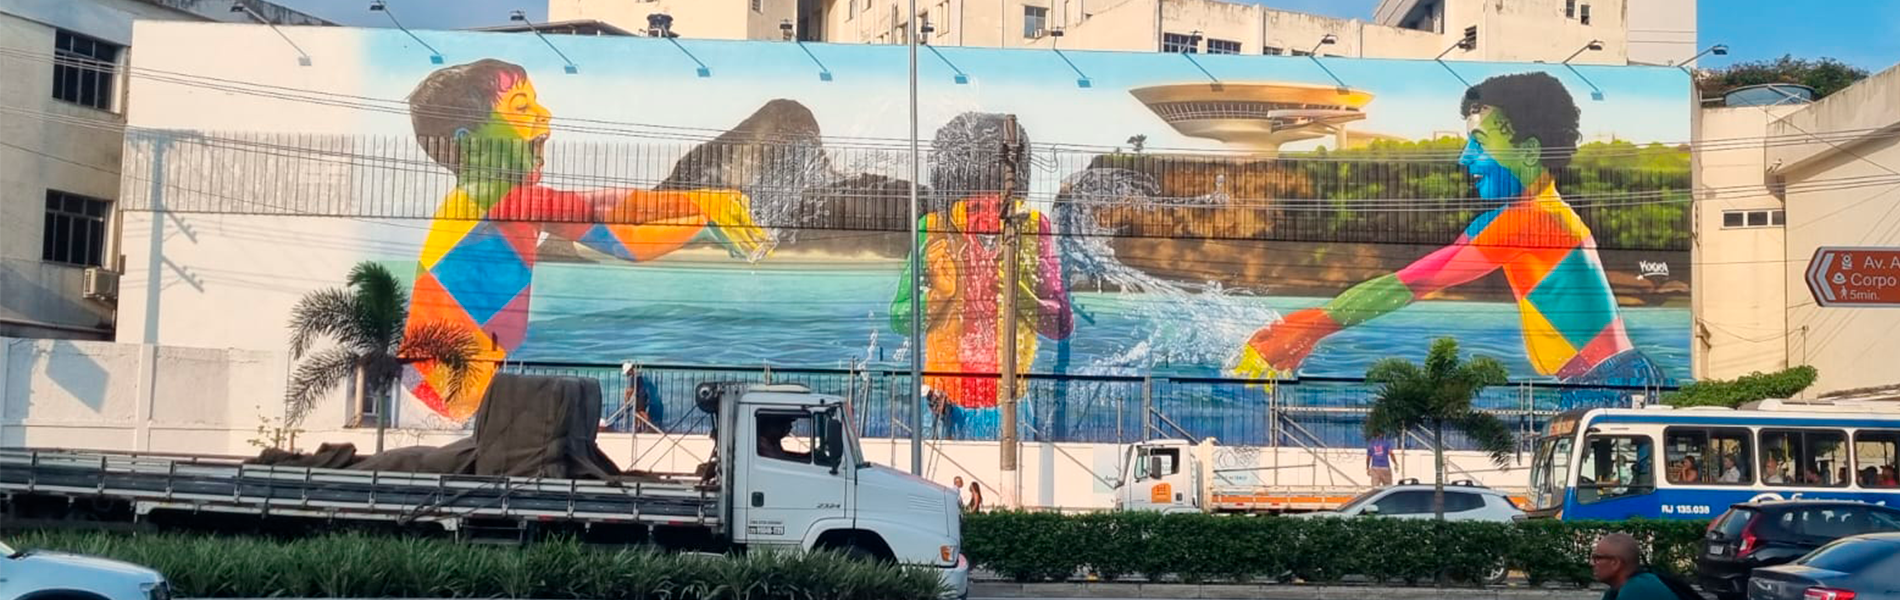 Muro pintado mostrando três crianças coloridas brincando na água. Ao fundo o museu de arte contemporânea de Niterói.